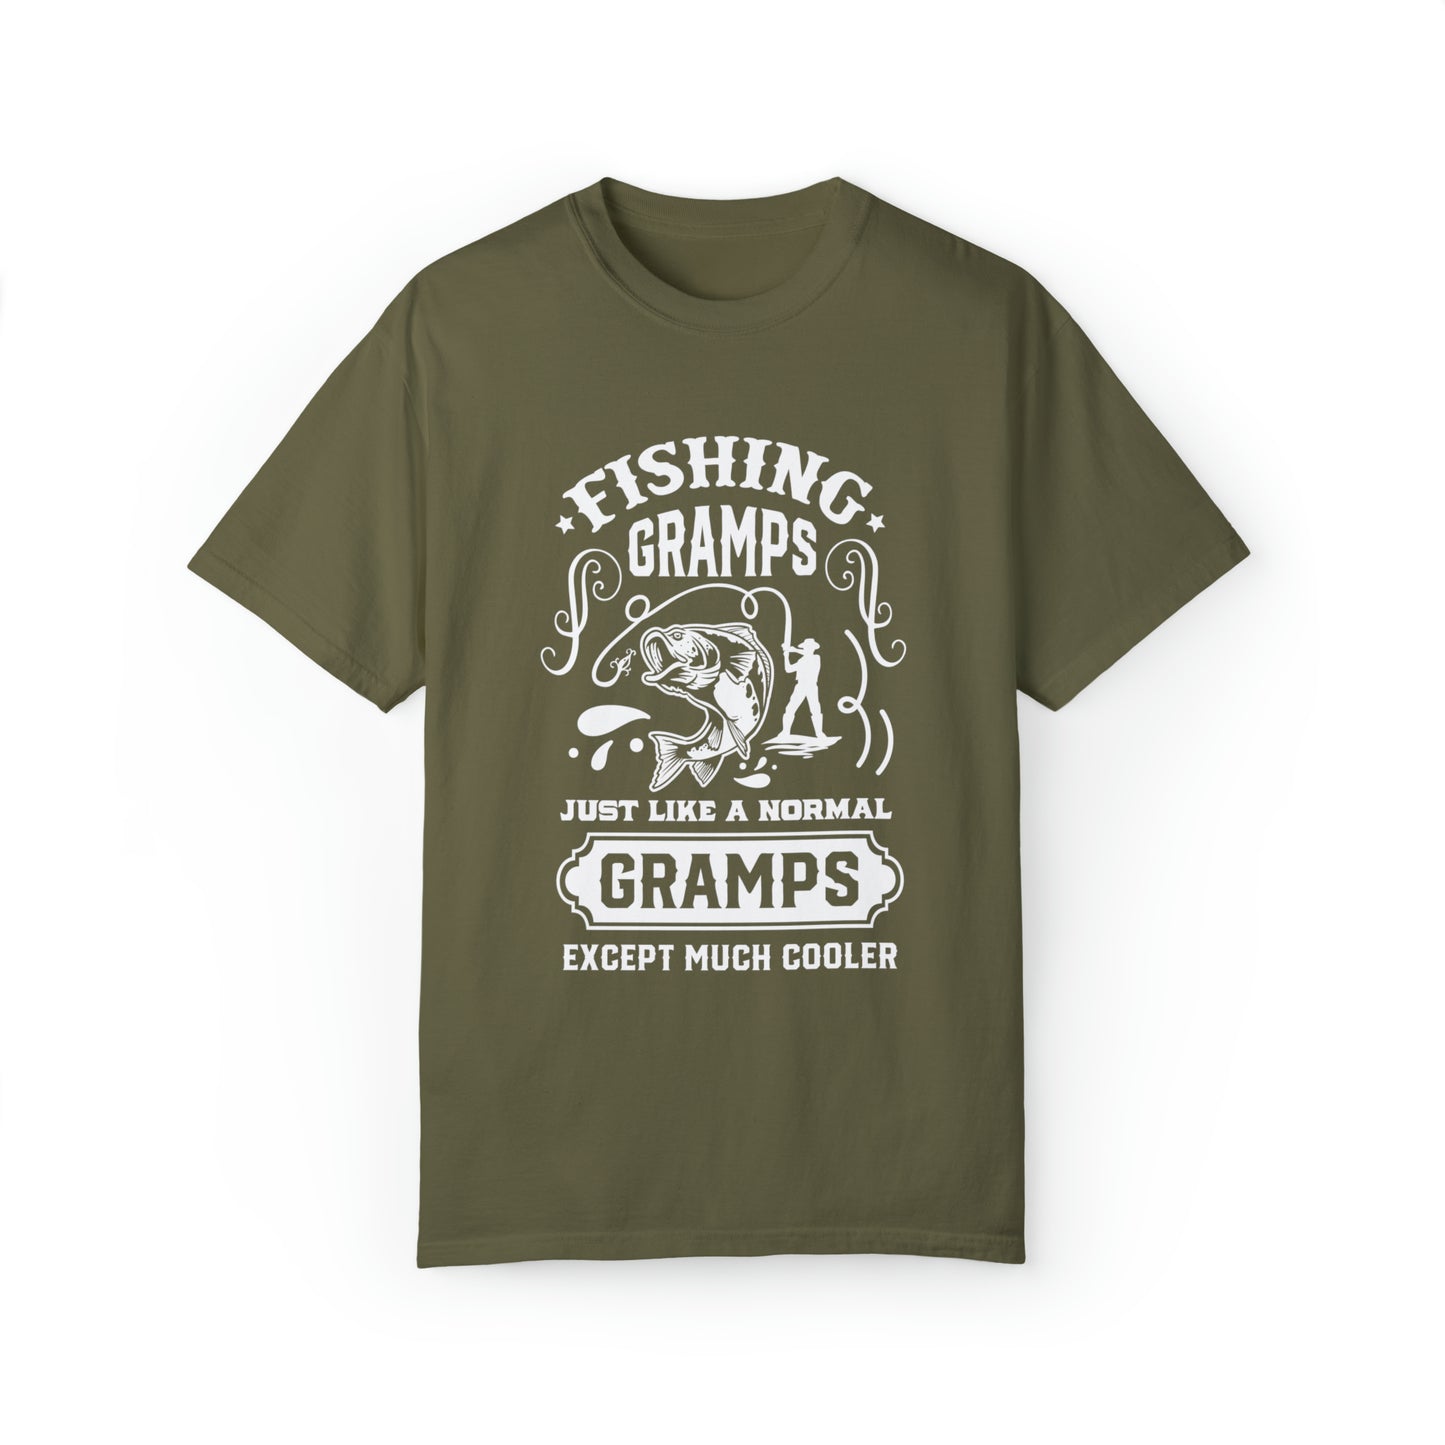 Cooler Than Average: Camiseta para abuelo entusiasta de la pesca